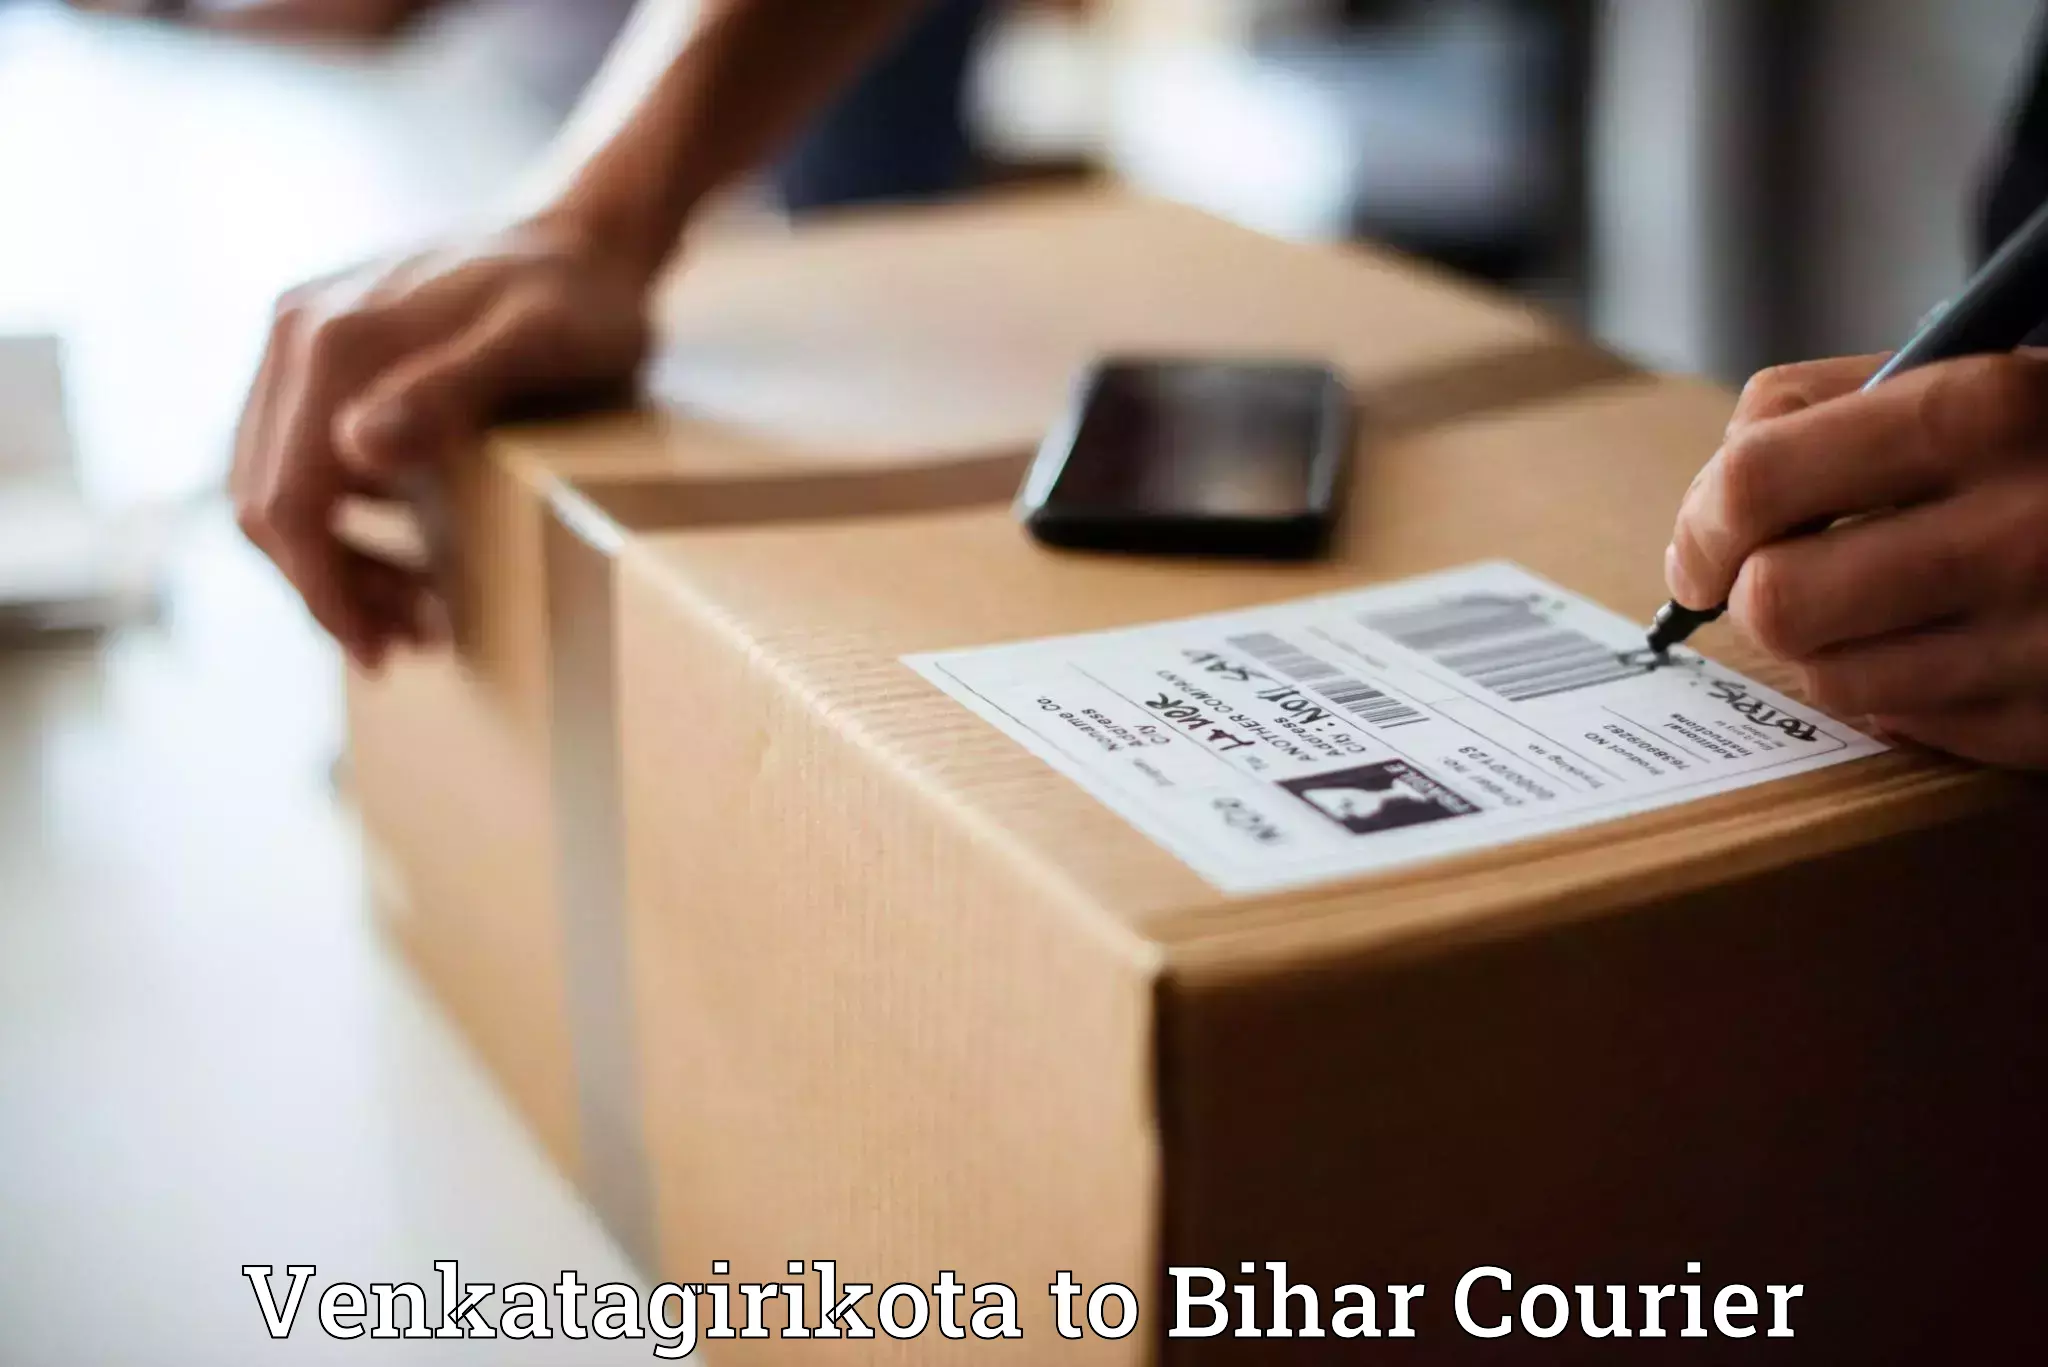 Logistics service provider Venkatagirikota to Basopatti